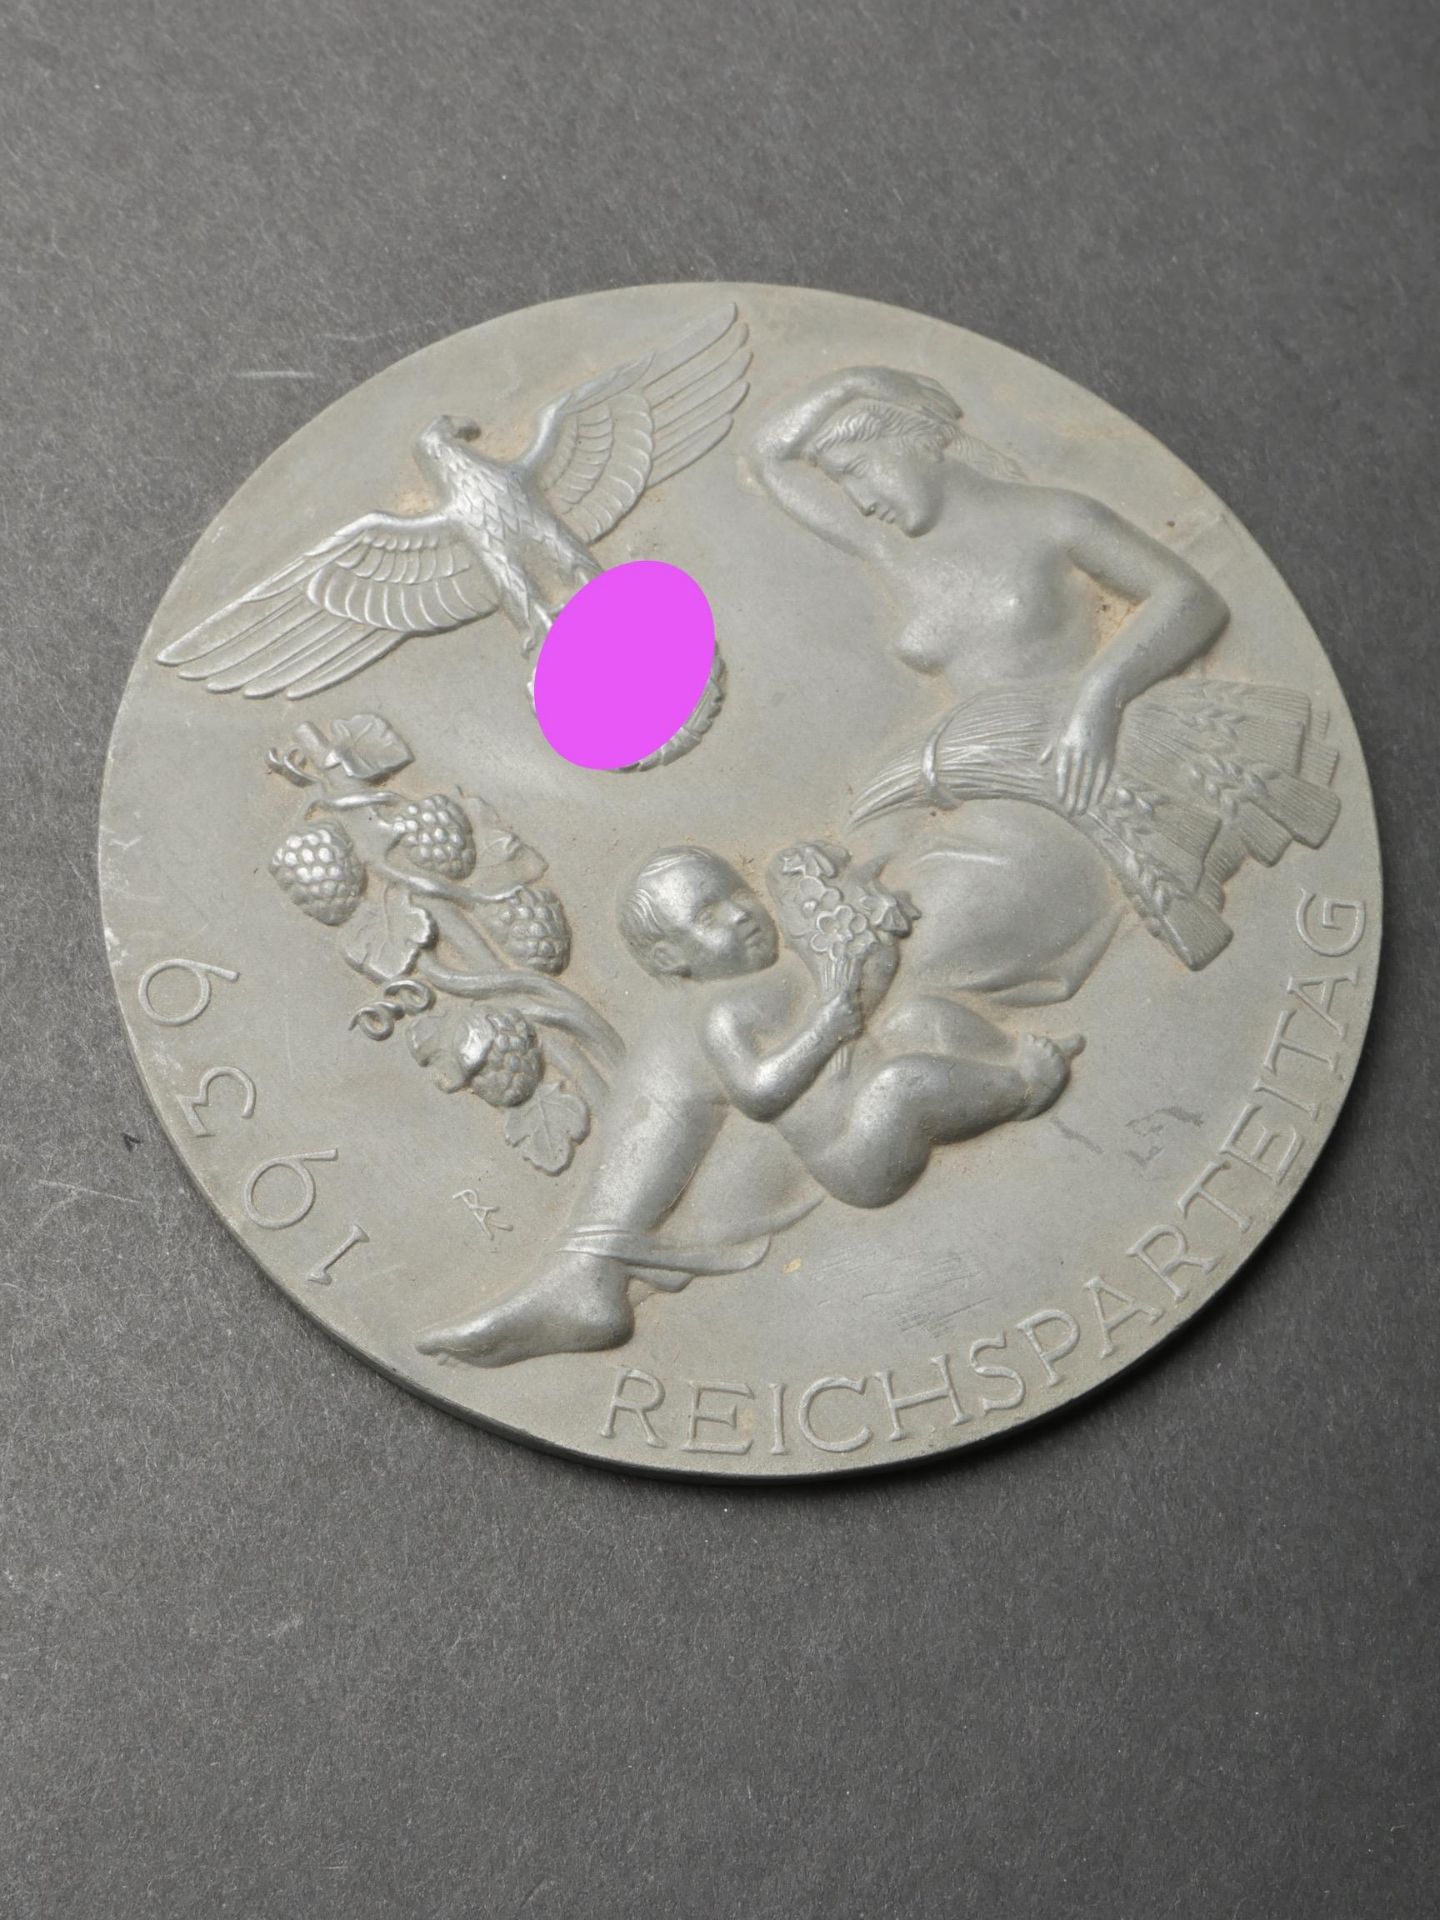 Medaille Reichsparteitag 1939. Reichsparteitag 1939 medal. - Image 2 of 4